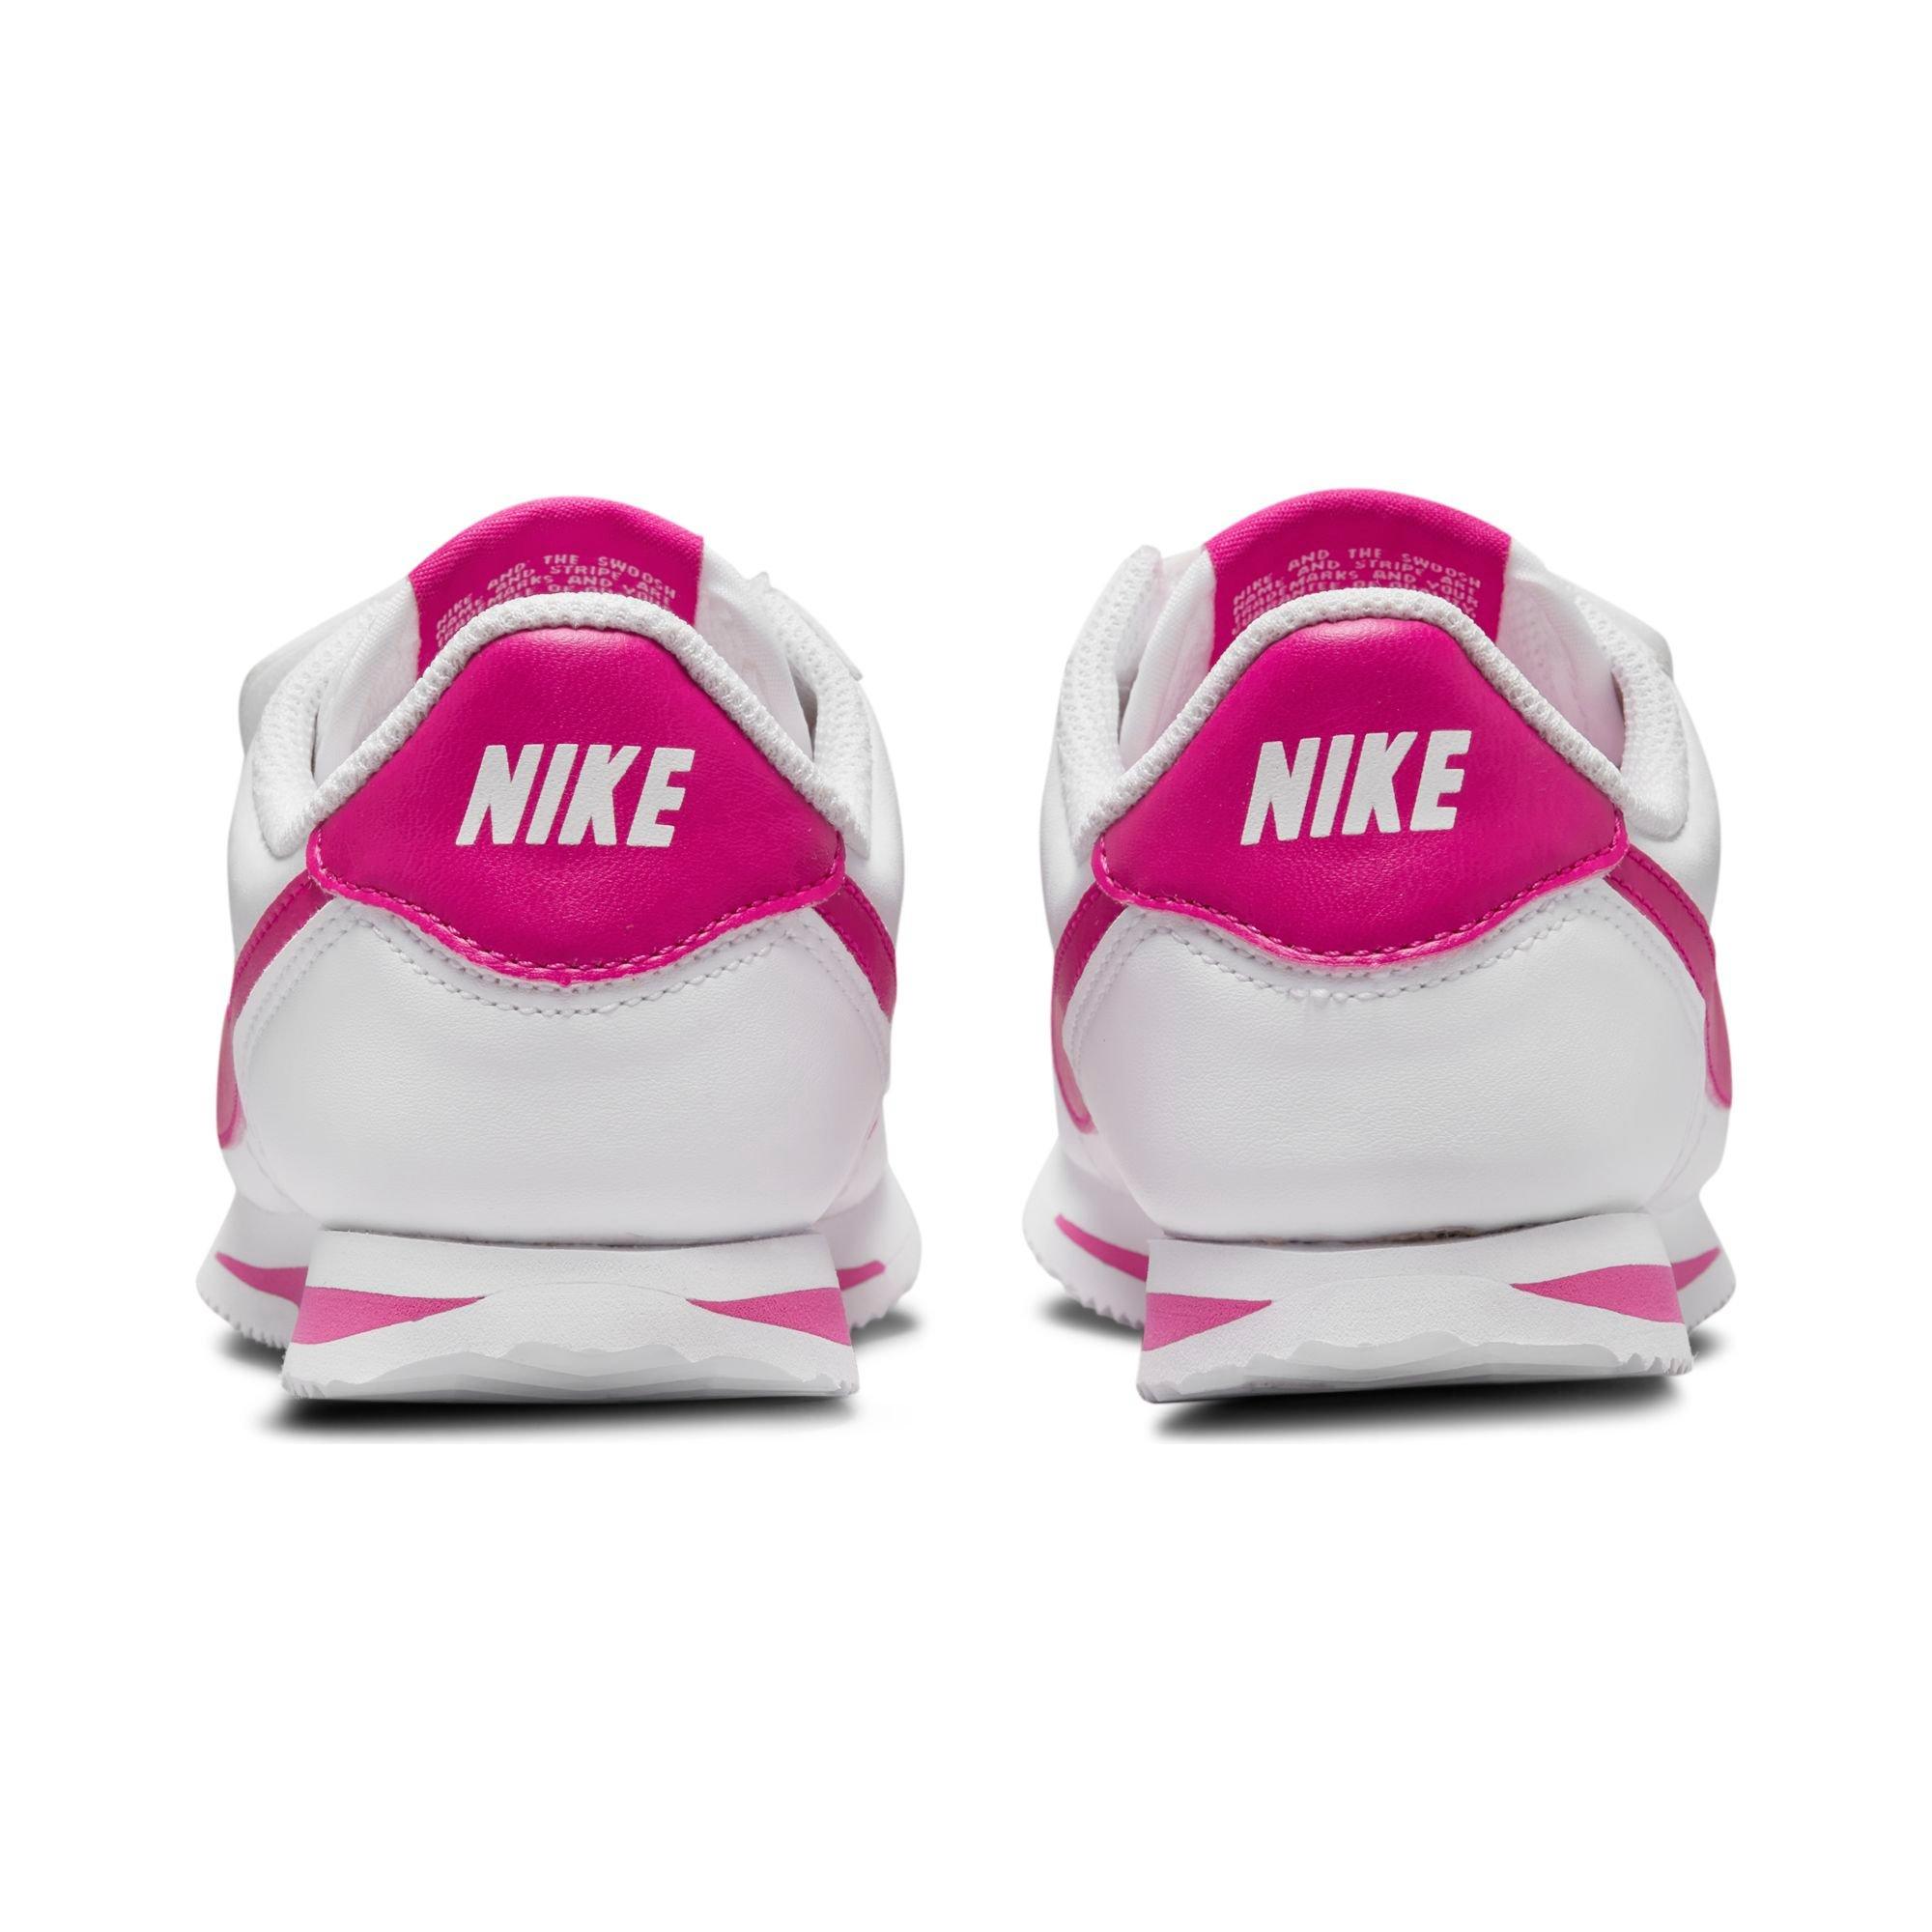 Nike Cortez White Pink Blast (GS) Kids' - 749502-106 - US